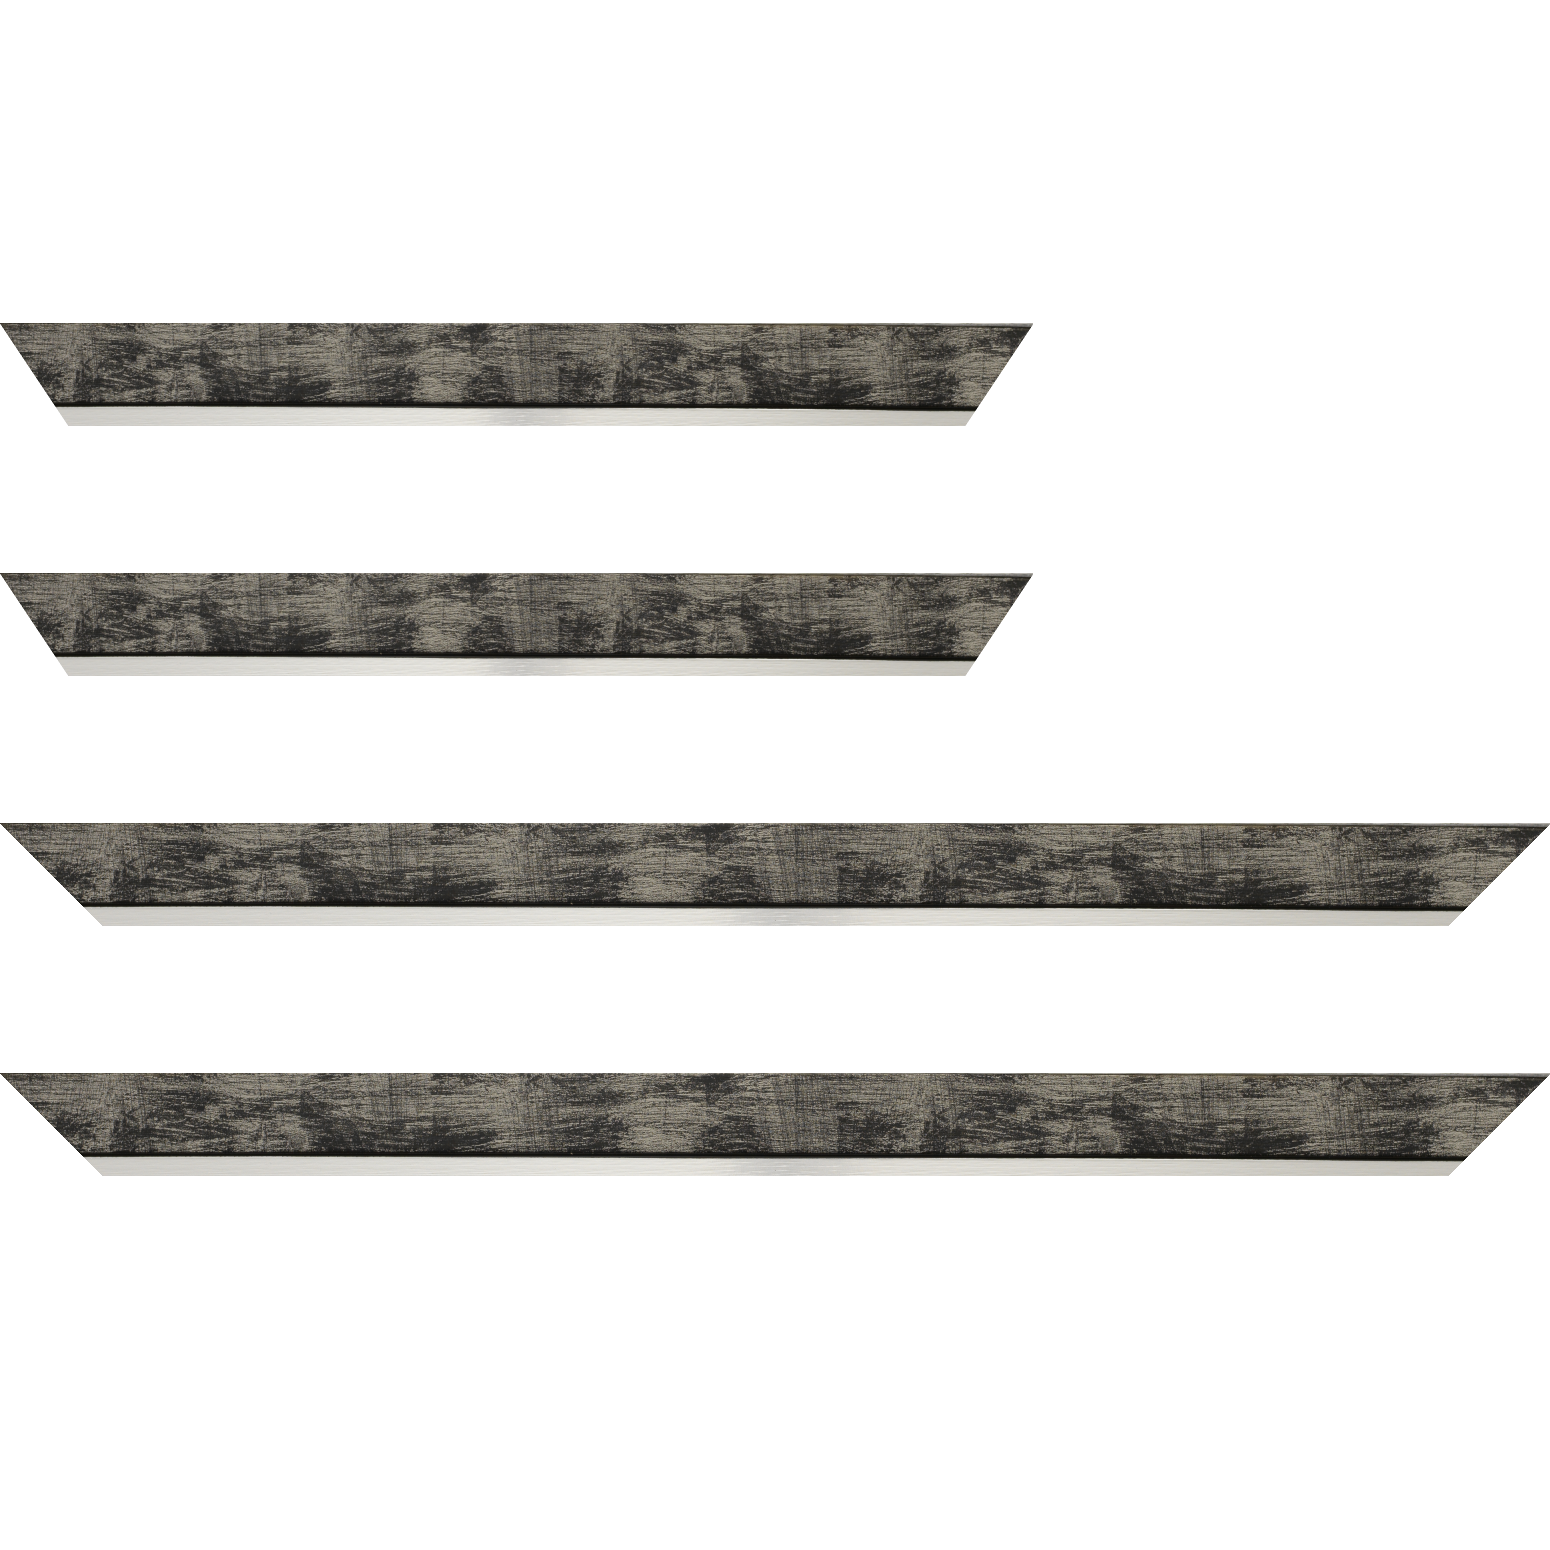 Baguette bois profil plat largeur 3.3cm couleur noir fond argent filet argent - 70x100